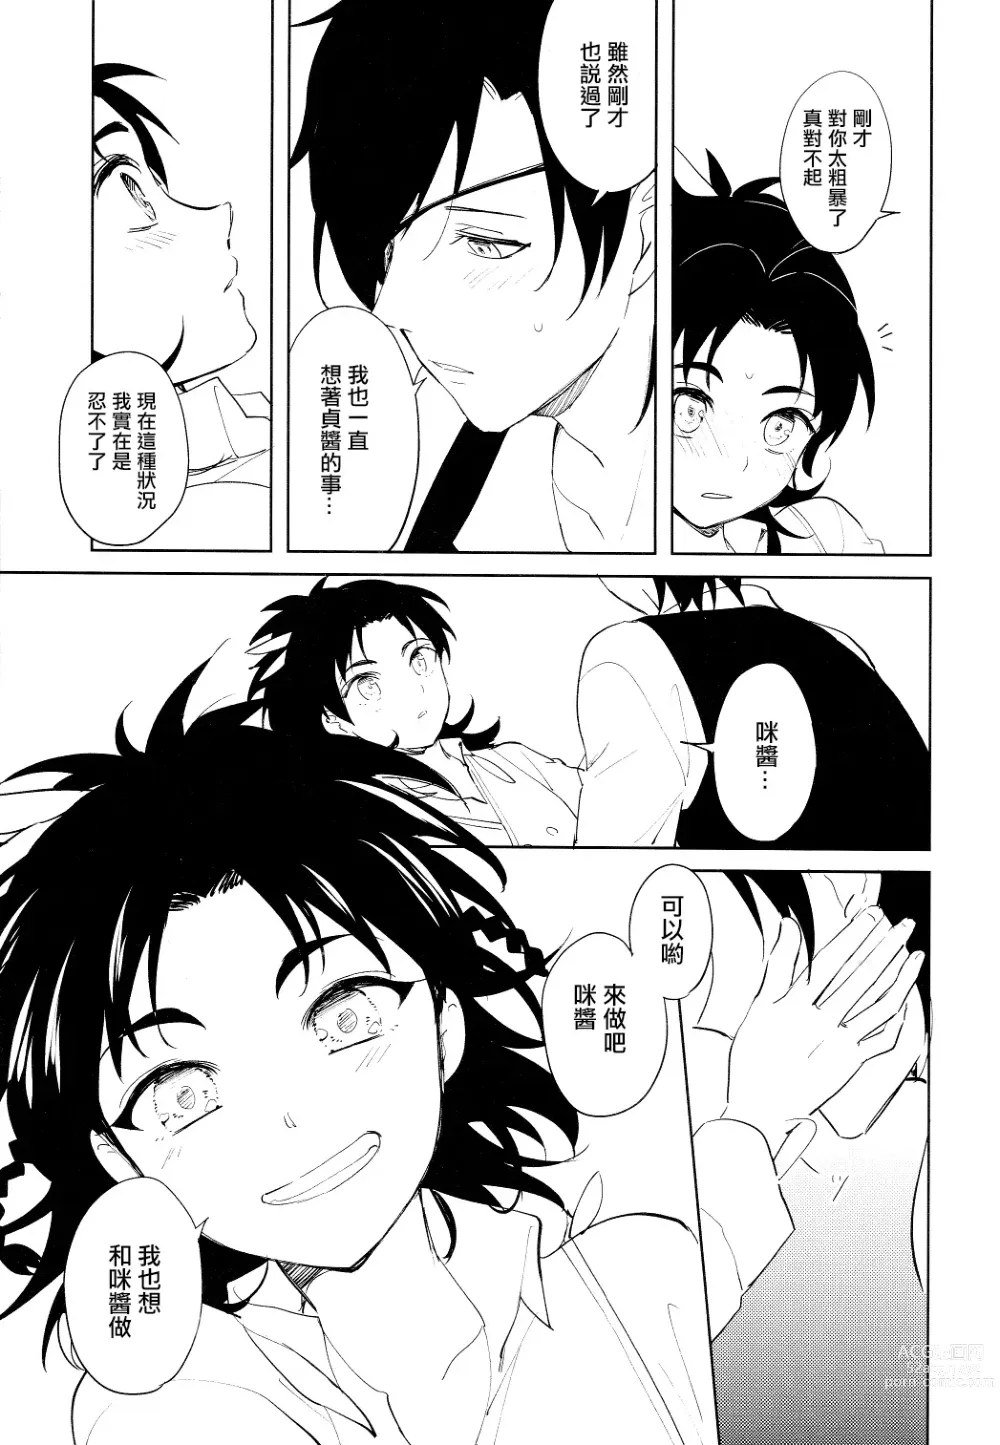 Page 16 of doujinshi 从一个人变成两个人